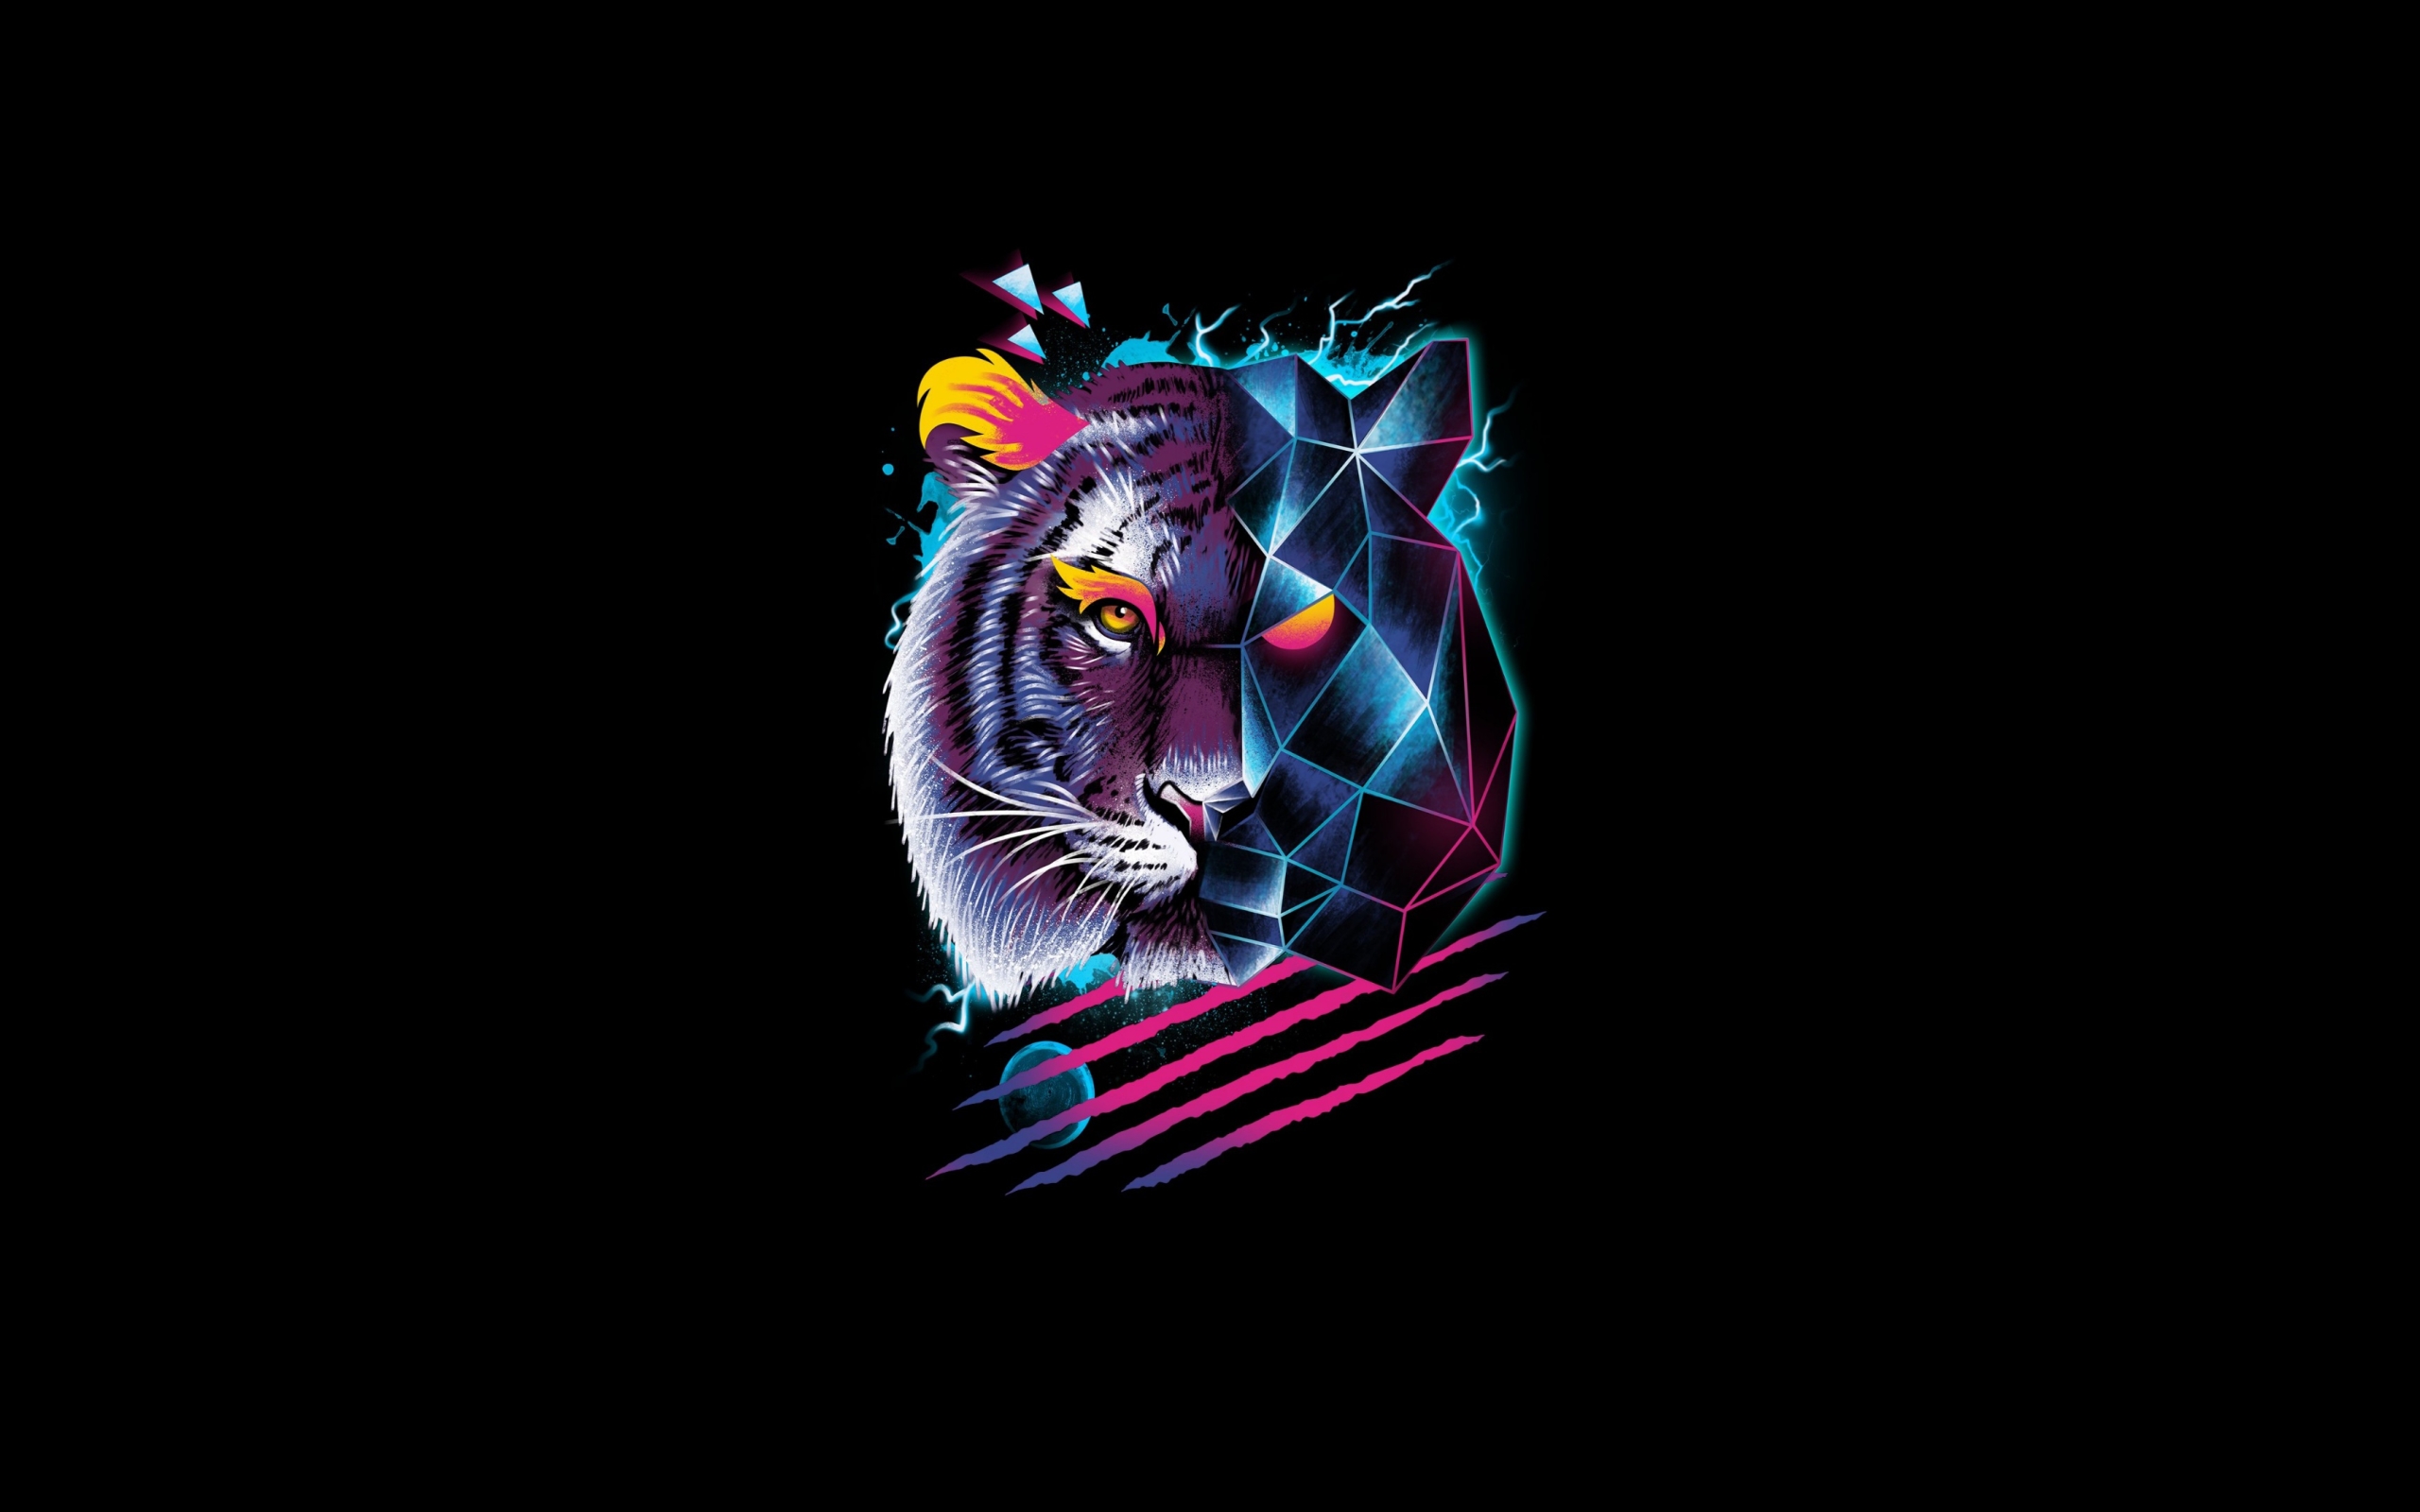 Wallpaper Of Artistic Retro Tiger Background Hd   80s Retro 2560x1600